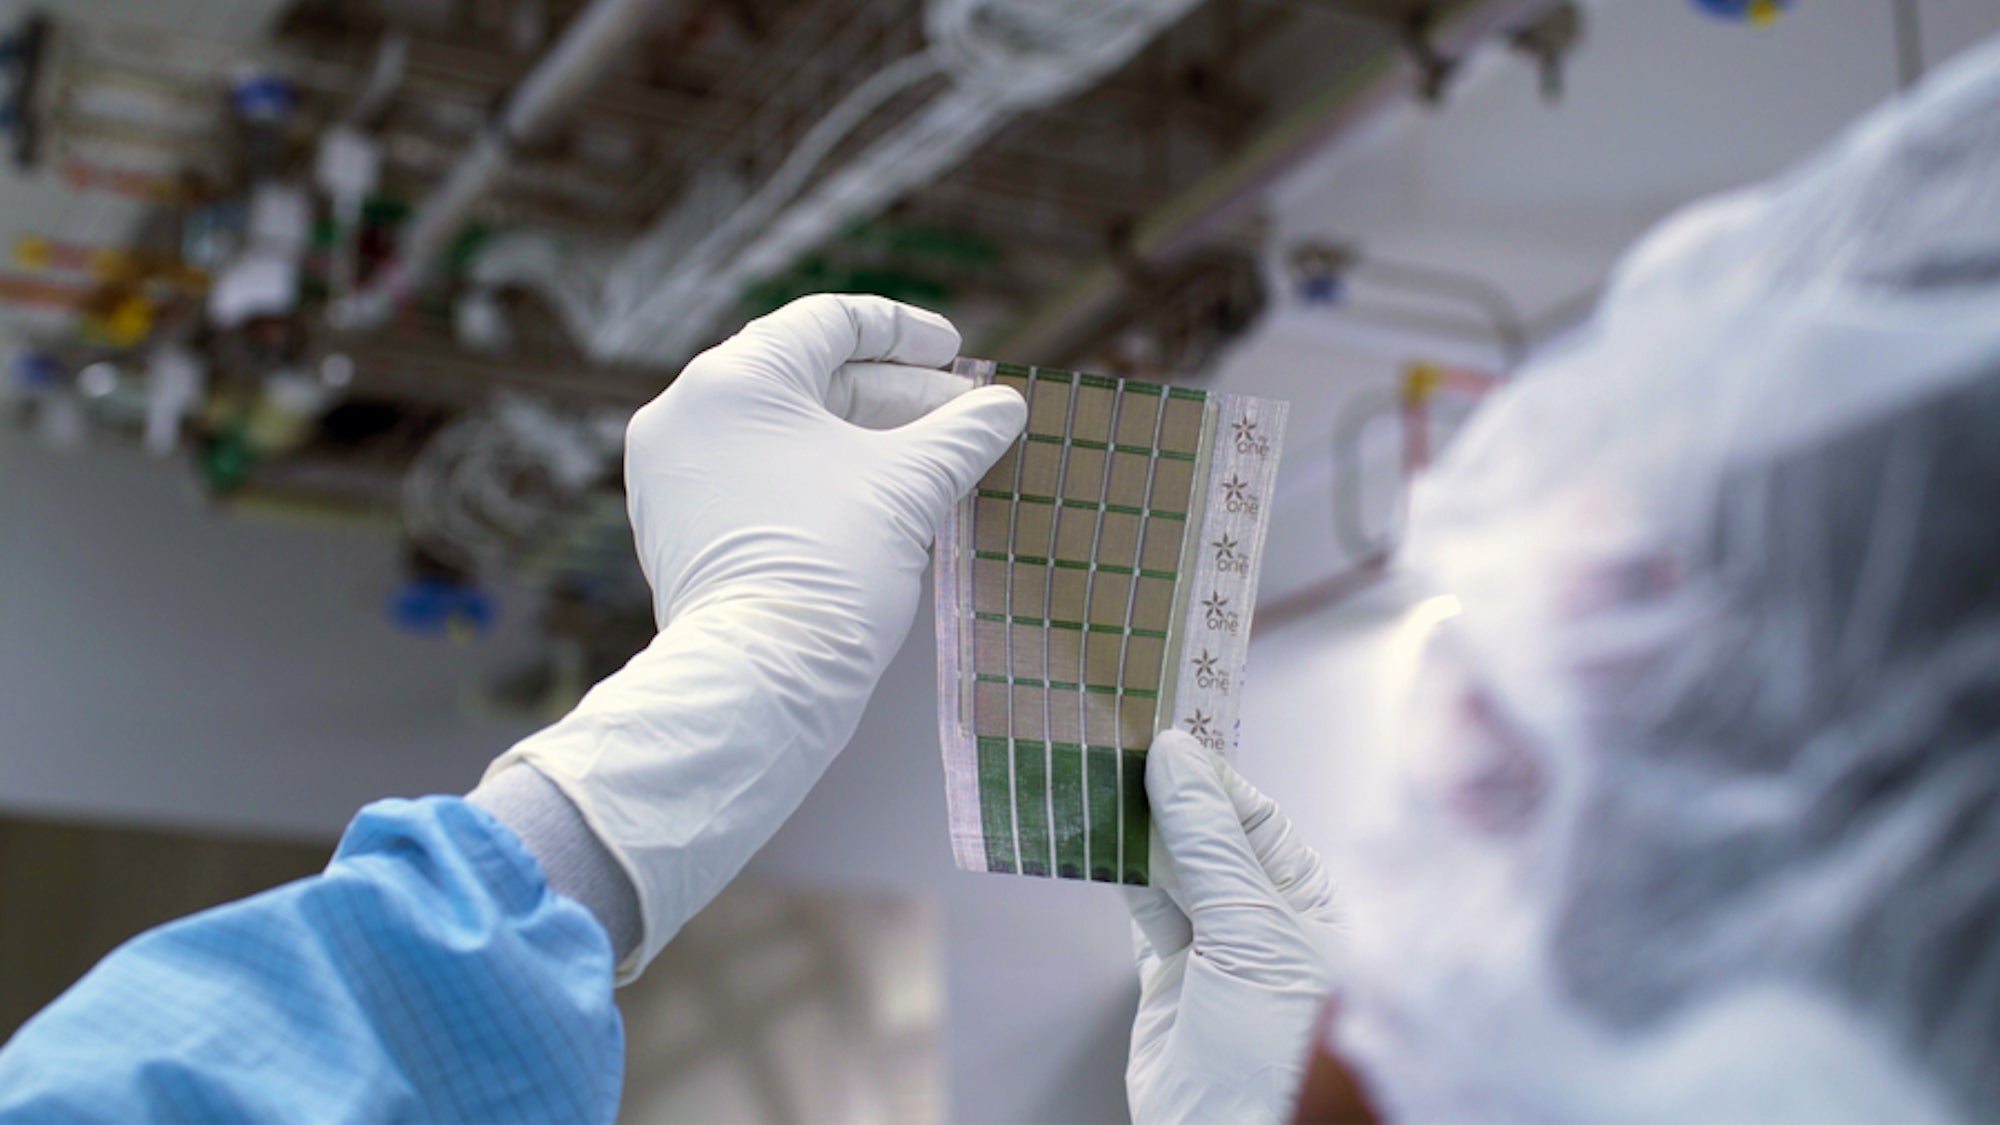 Científicos del MIT crean paneles solares tan delgados como un cabello humano